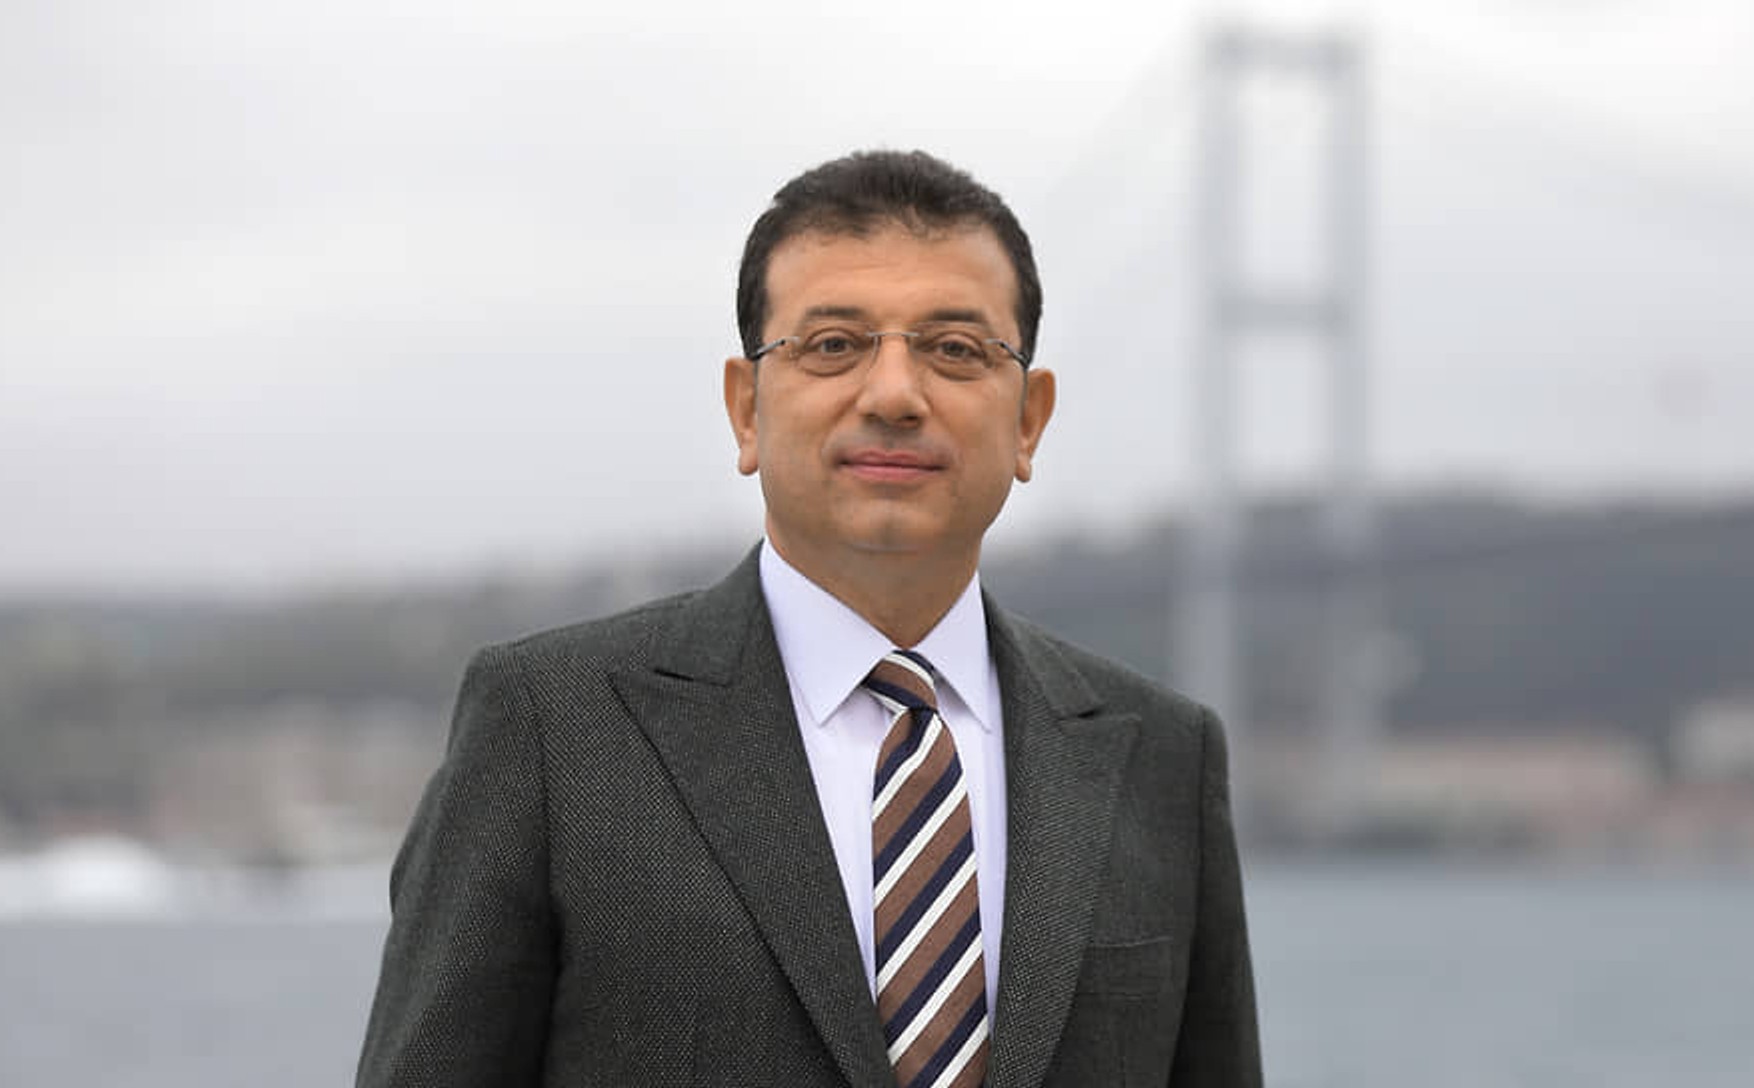 Мэра Стамбула Имамоглу приговорили к тюремному сроку за оскорбление должностных лиц. Он и его сторонники вышли на митинг